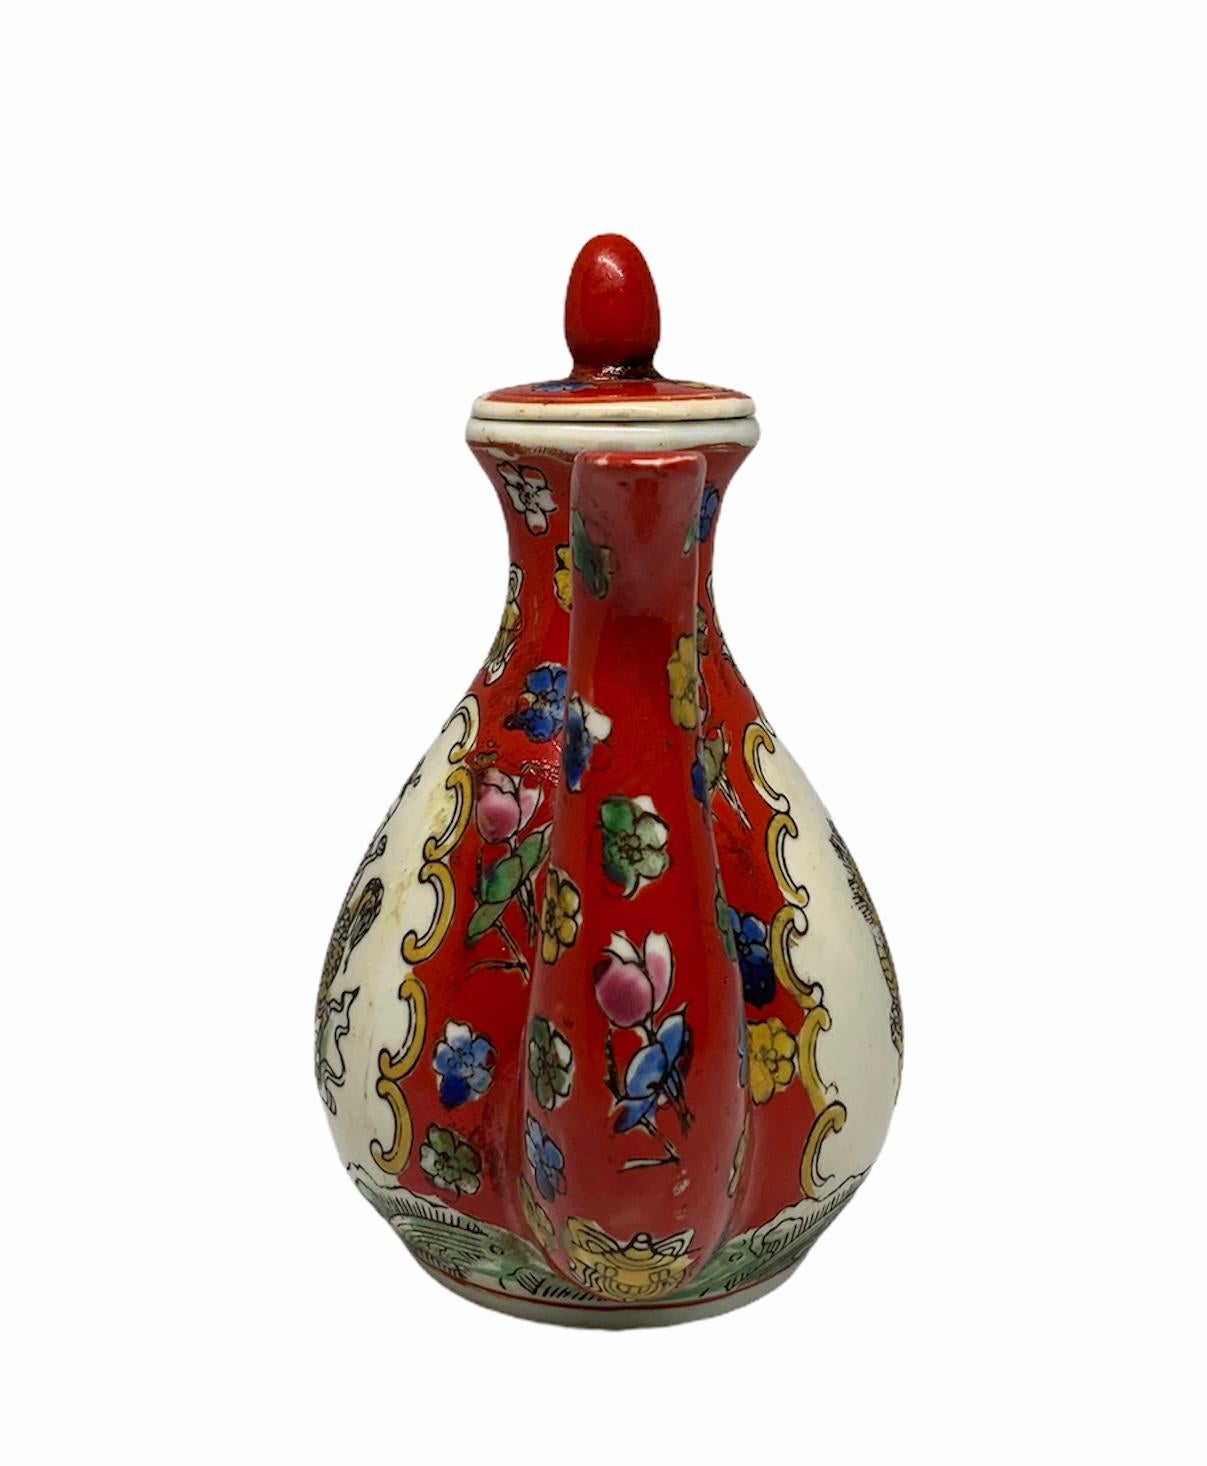 Il s'agit d'un petit pot à vin ou théière chinois peint à la main représentant un fond rouge avec quelques petites fleurs de différentes couleurs. Au centre avant et arrière, il y a une scène d'un homme chinois chevauchant un 